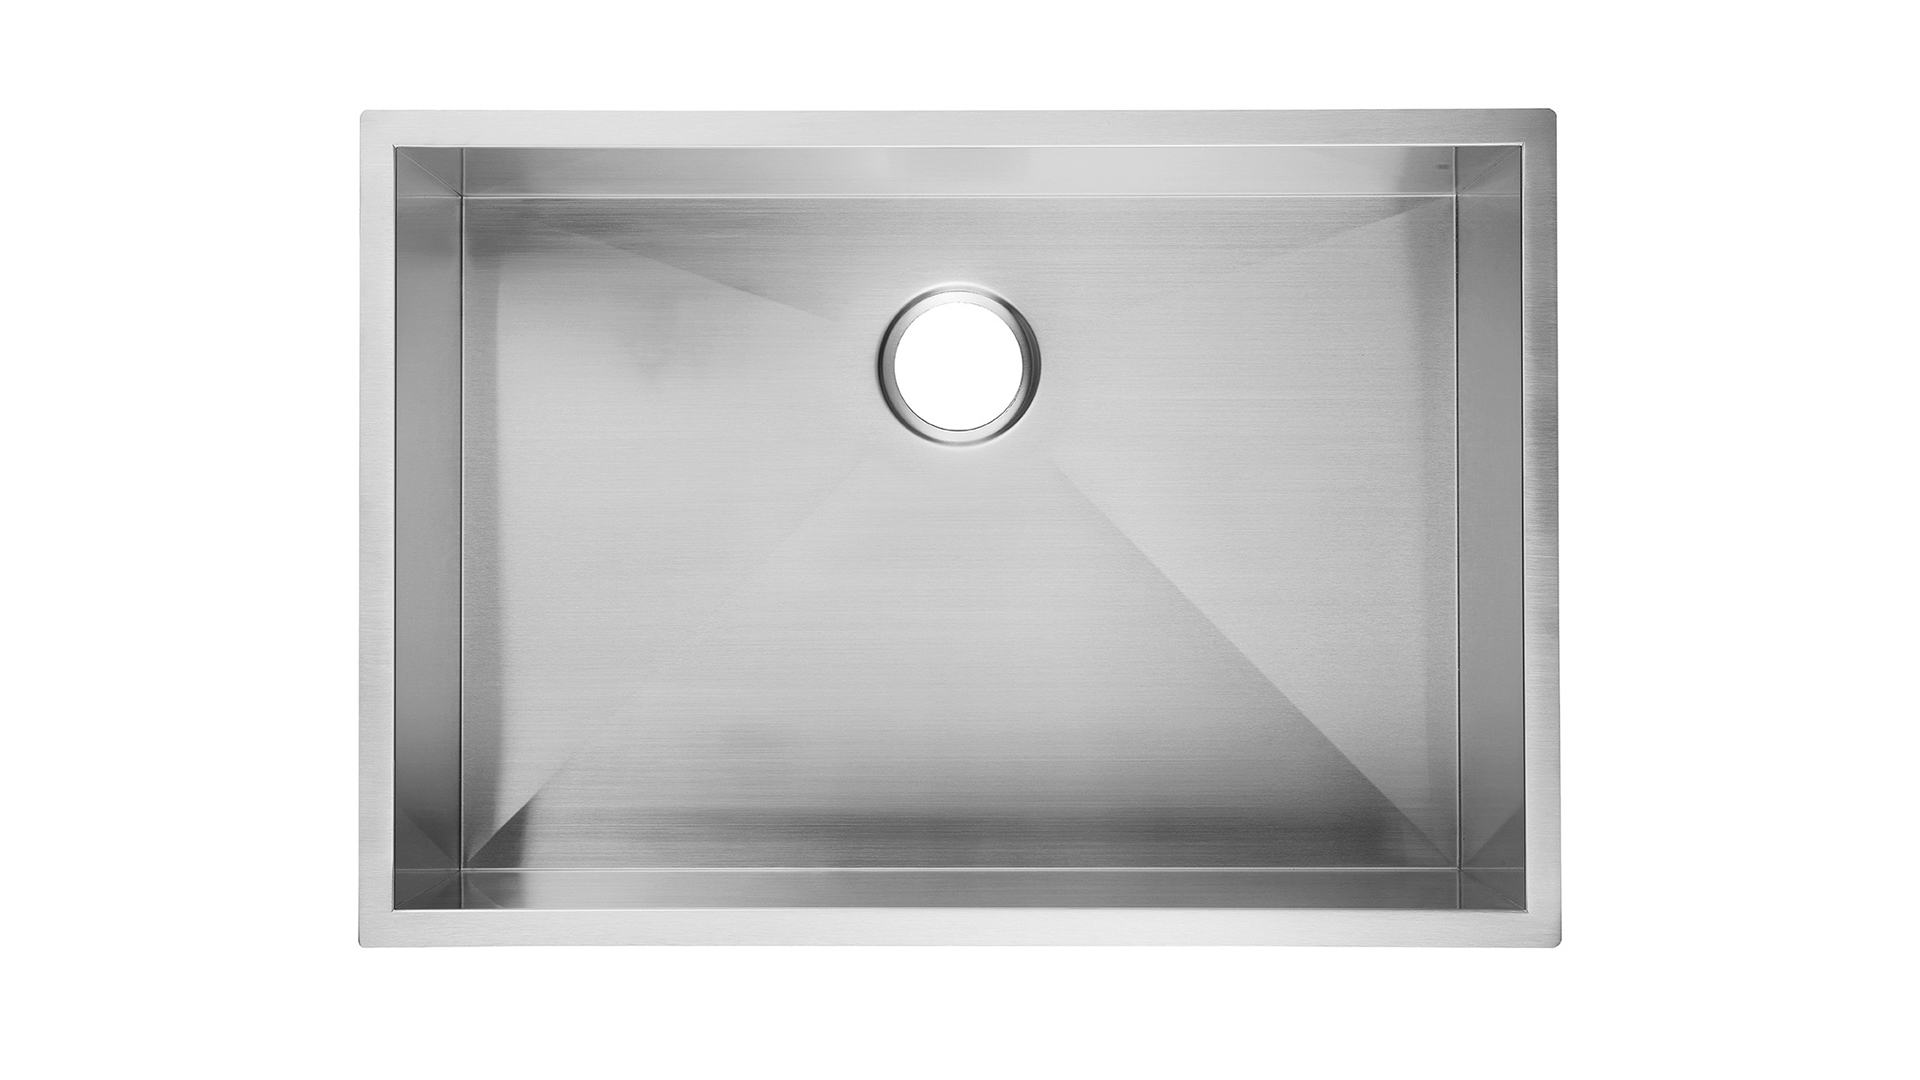 Pia de cozinha de 23 polegadas Undermount Aço inoxidável 9 polegadas de profundidade, pia de cozinha Aquacubic Undermount